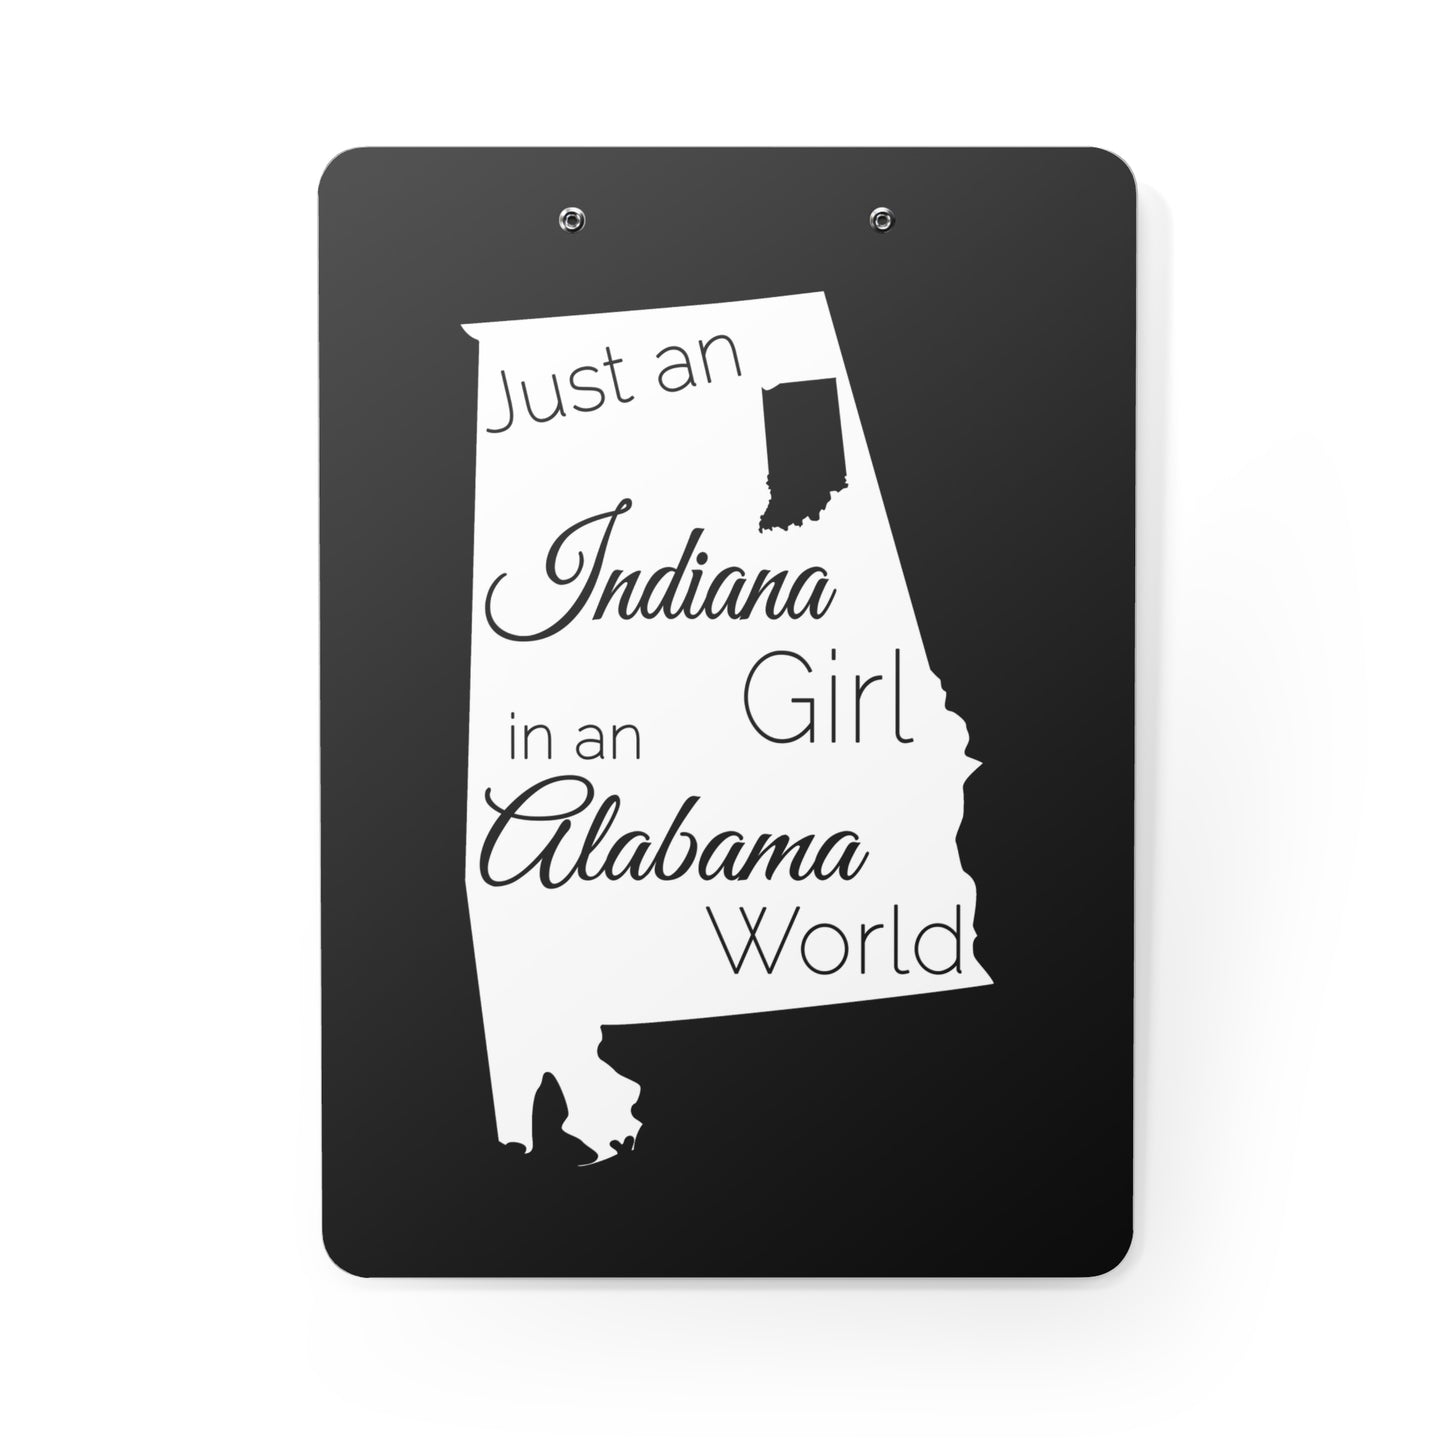 Just an Indiana Girl in an Alabama World Clipboard